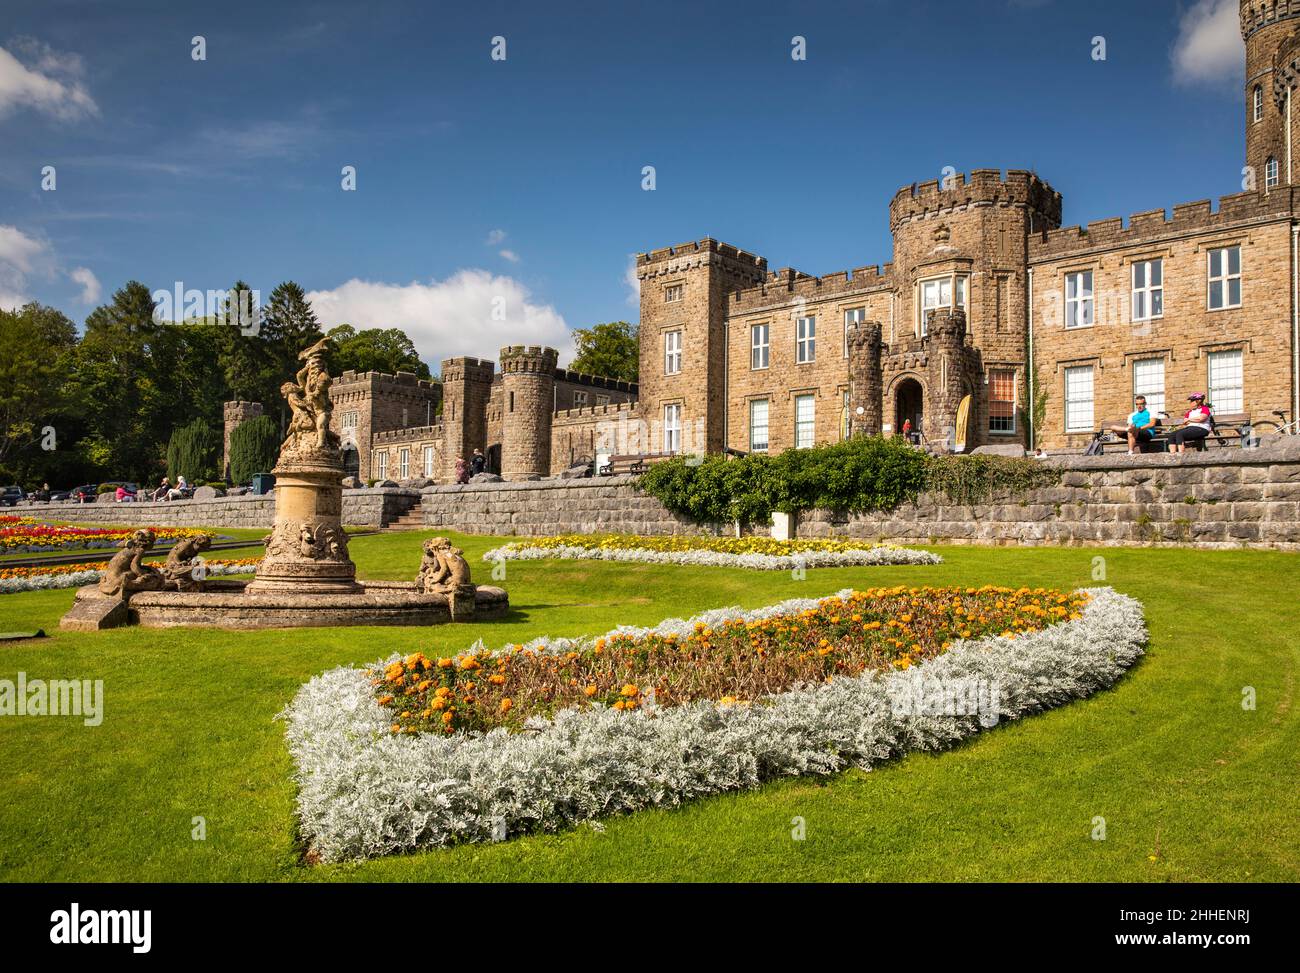 Royaume-Uni, pays de Galles, Merthyr Tydfil, Cyfartha Castle Park, lits de fleurs colorés à l'entrée du château Banque D'Images